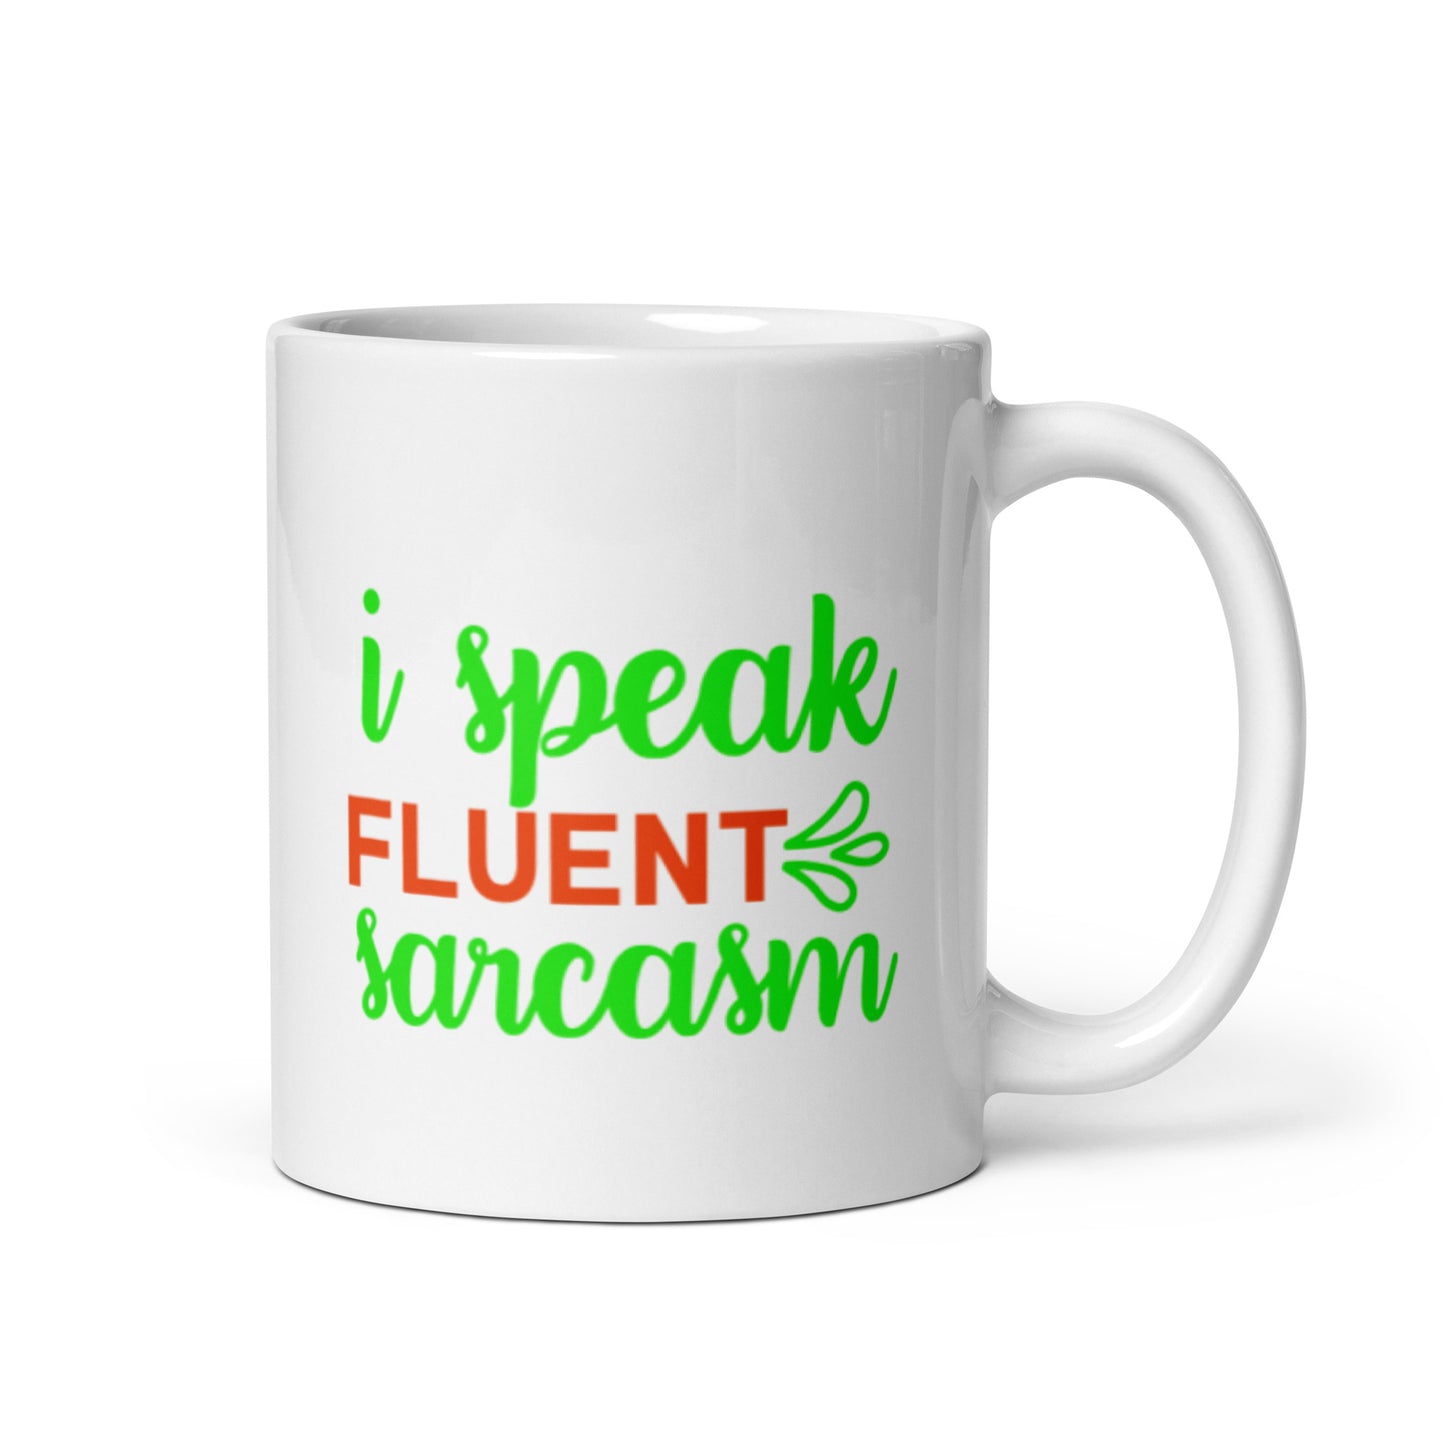 I Speak Fluent Sarcasm White glossy mug